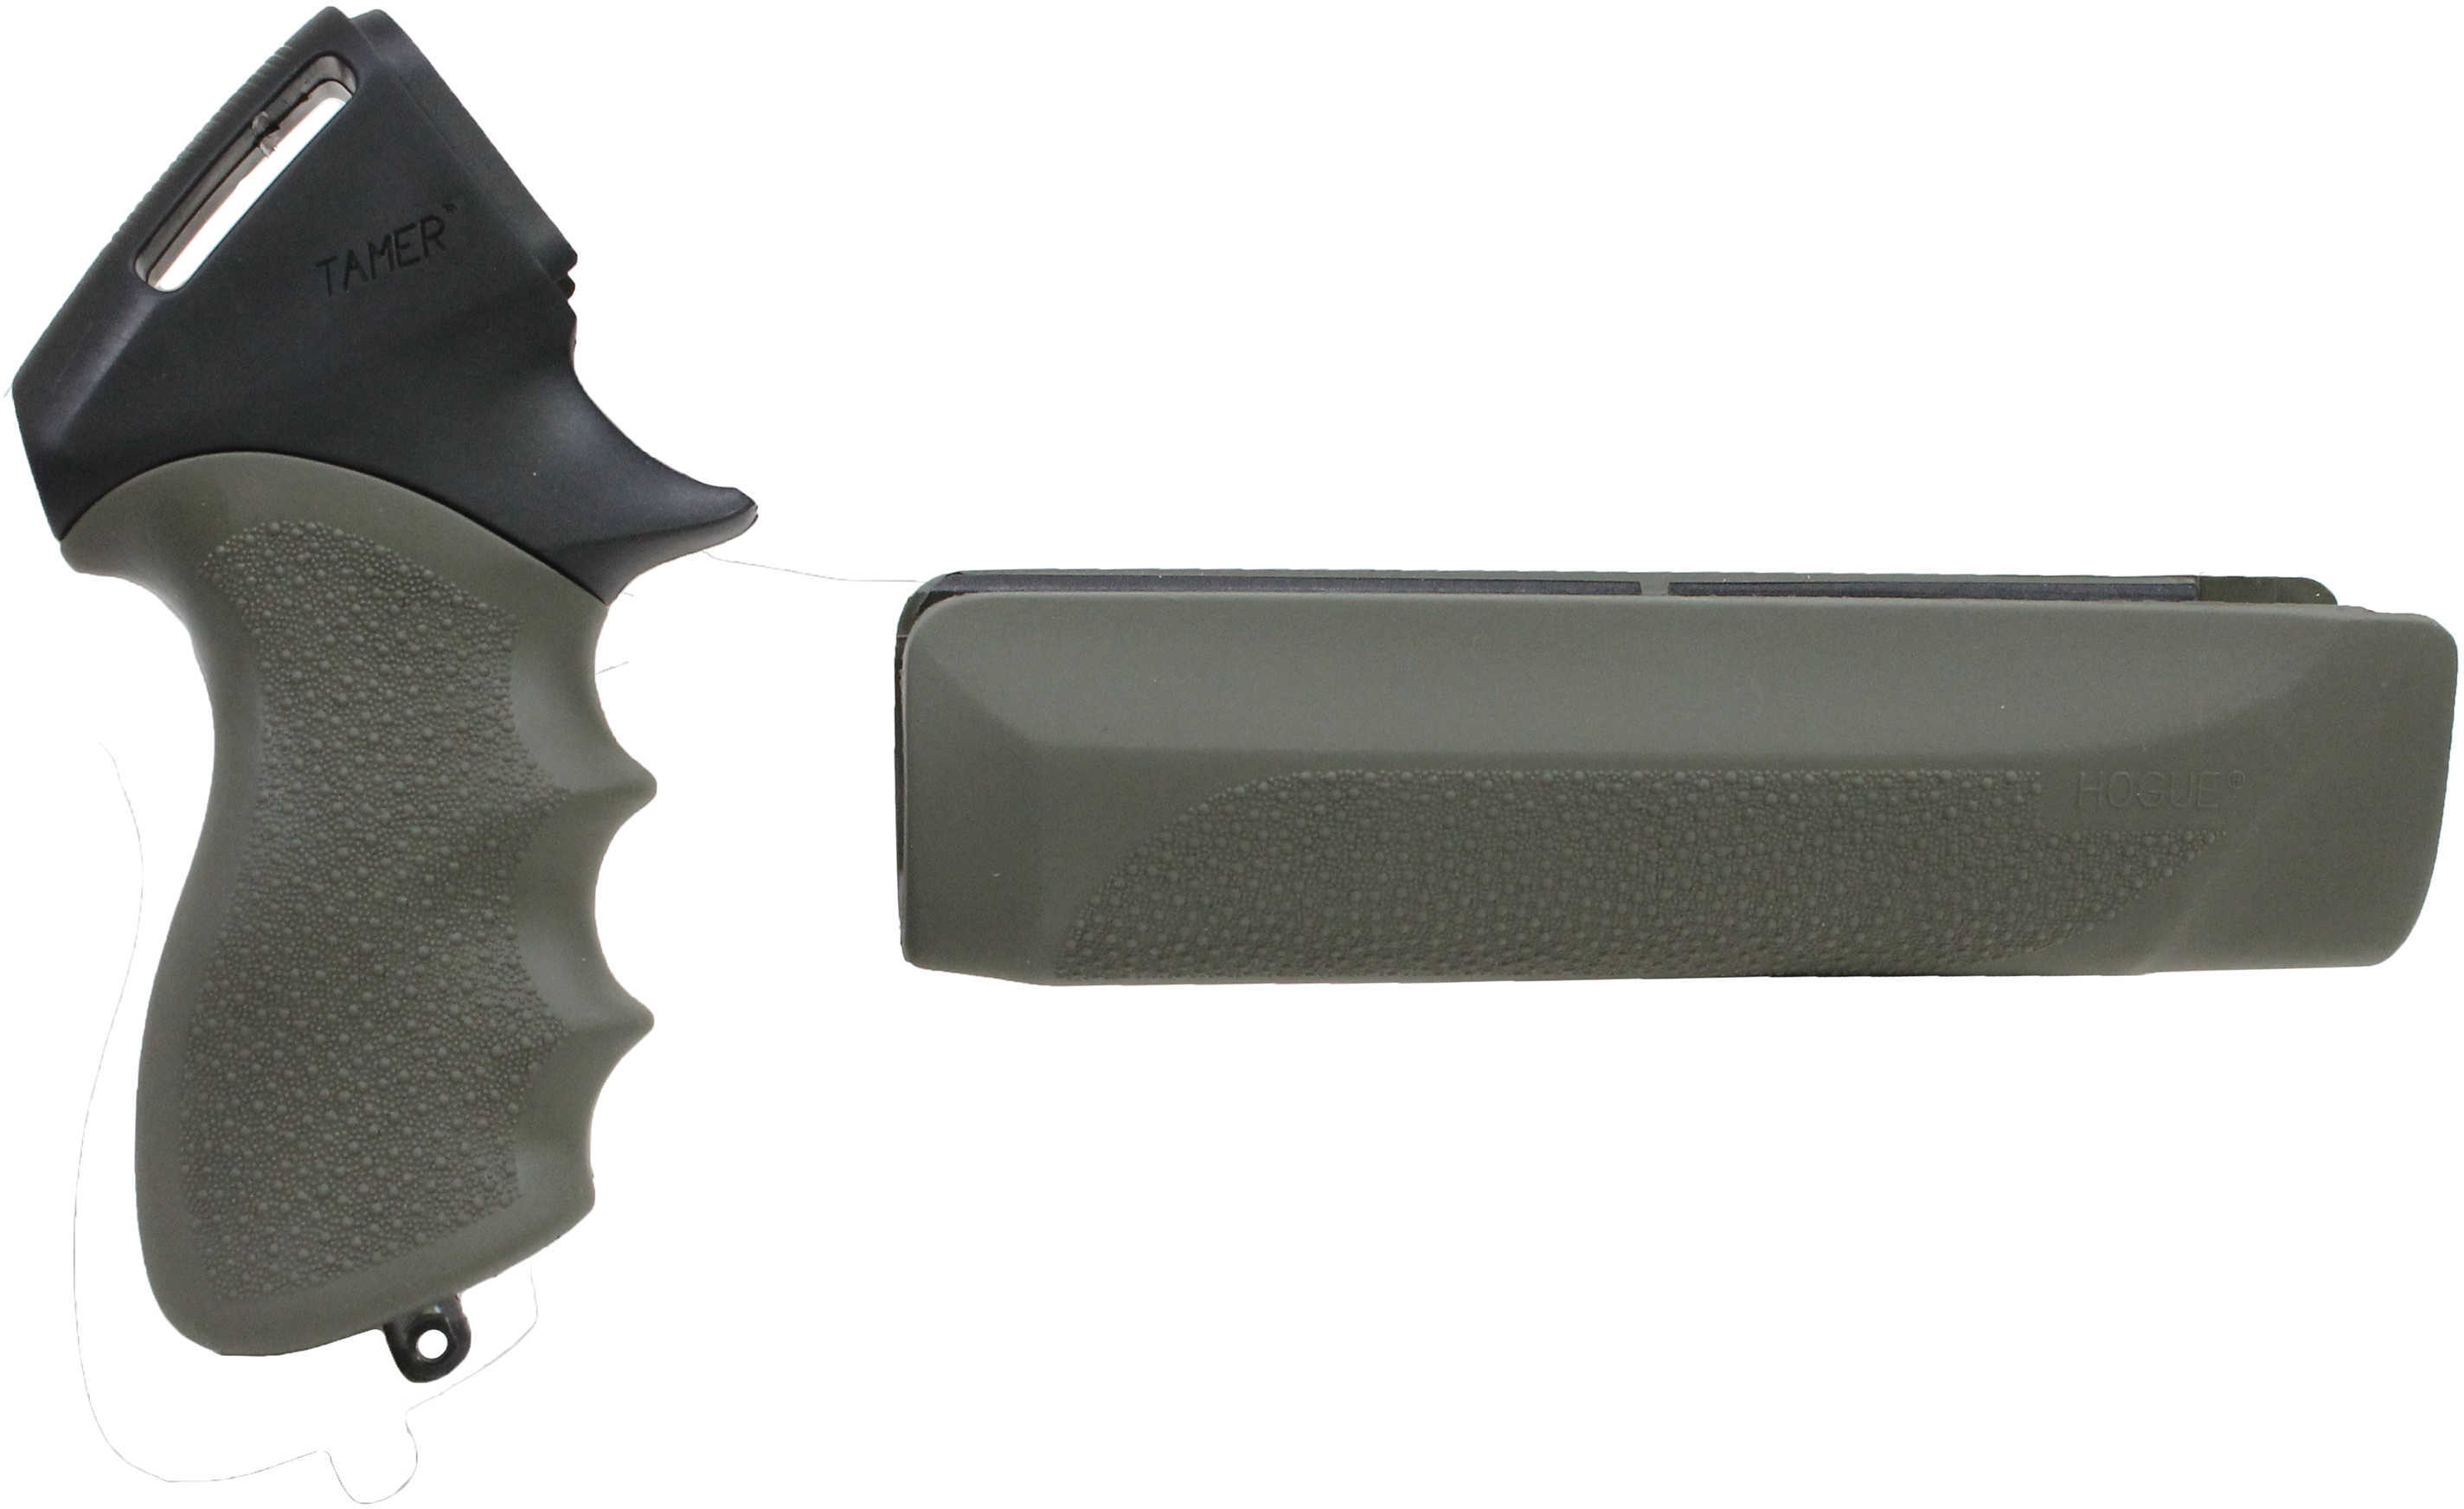 Hogue Remington 870 12 Gauge Tamer Shotgun Pistol Grip and Forend Olive Drab Green Md: 08115